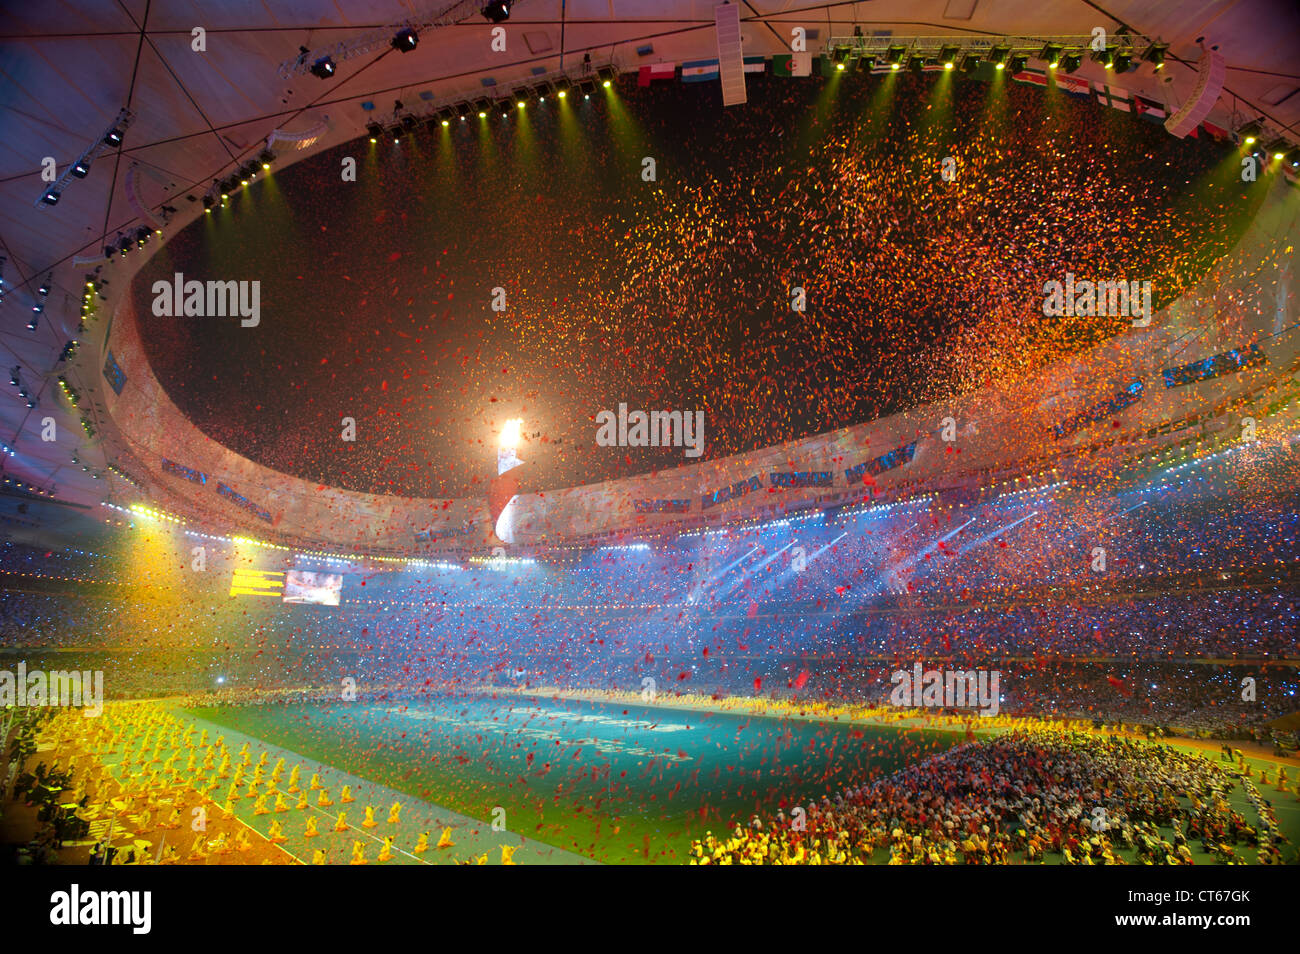 Abschlussfeier der Paralympischen Spiele 2008 in Peking, China am 16. September 2008. Stockfoto